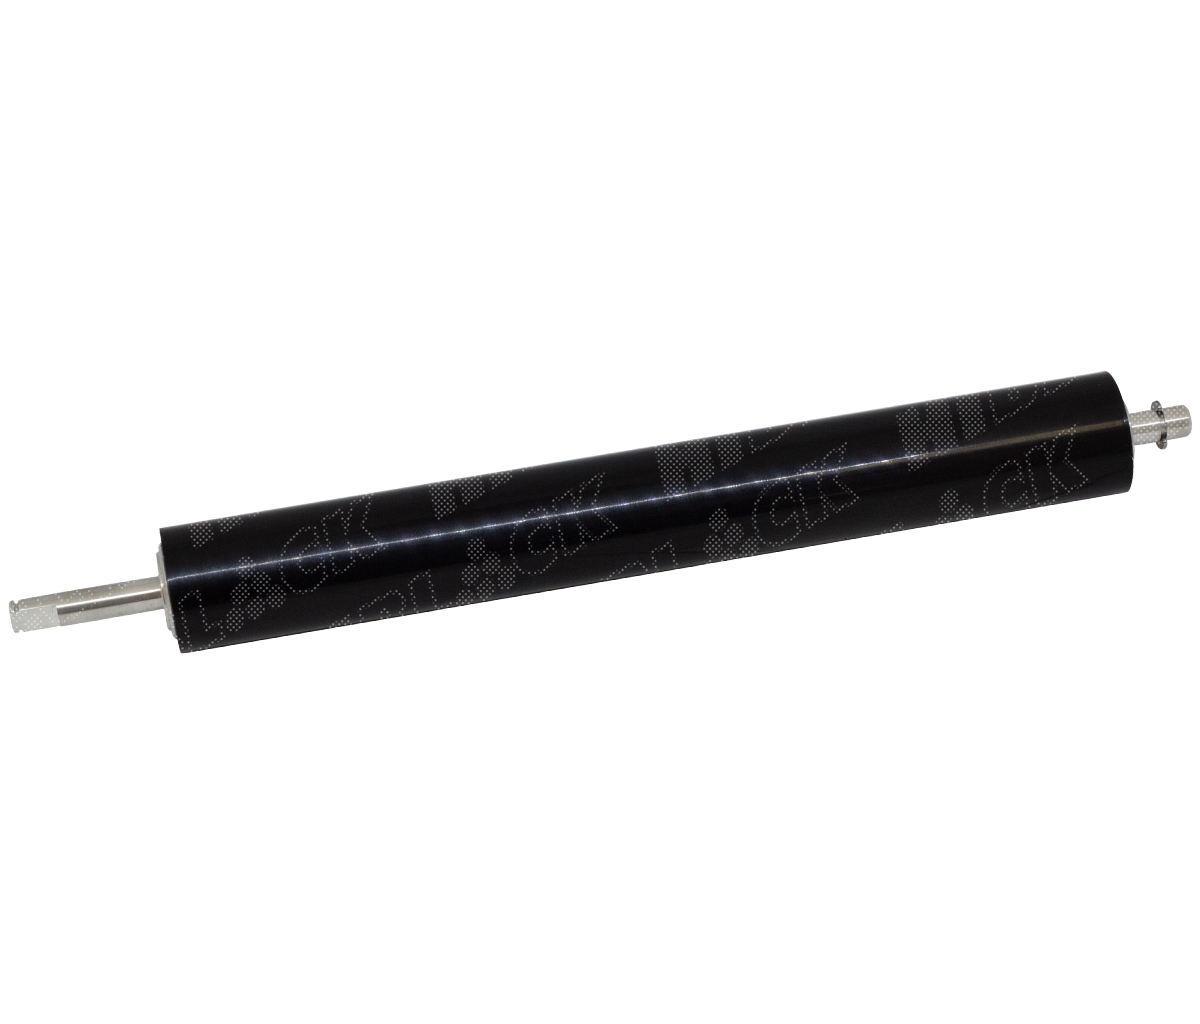 Вал резиновый нижний Hi-Black для HP LJM601/602/603/604/605/606